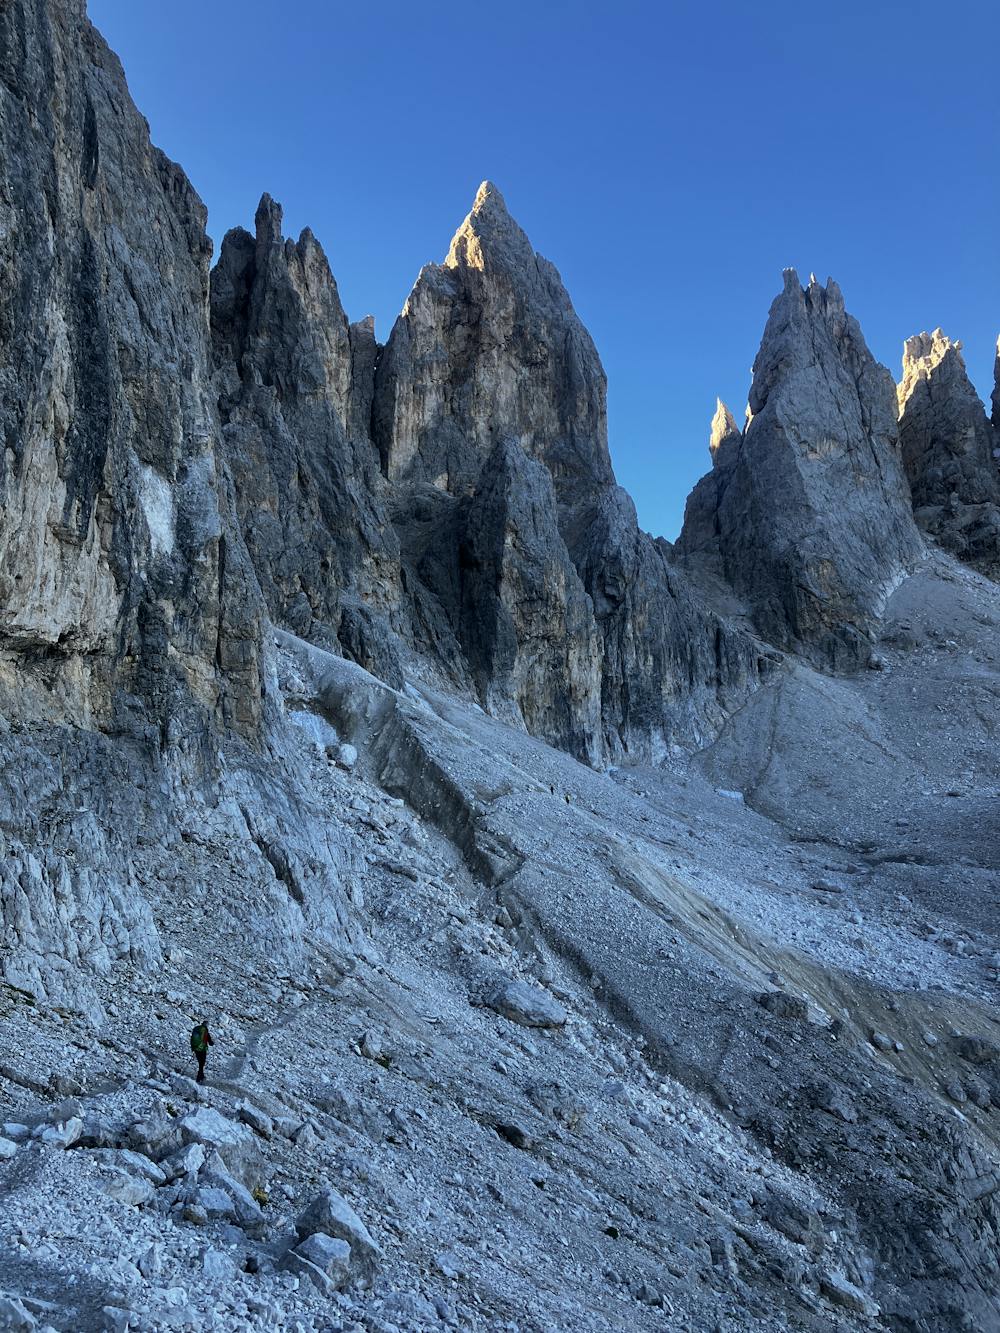 The ascent to Passo del Farangole